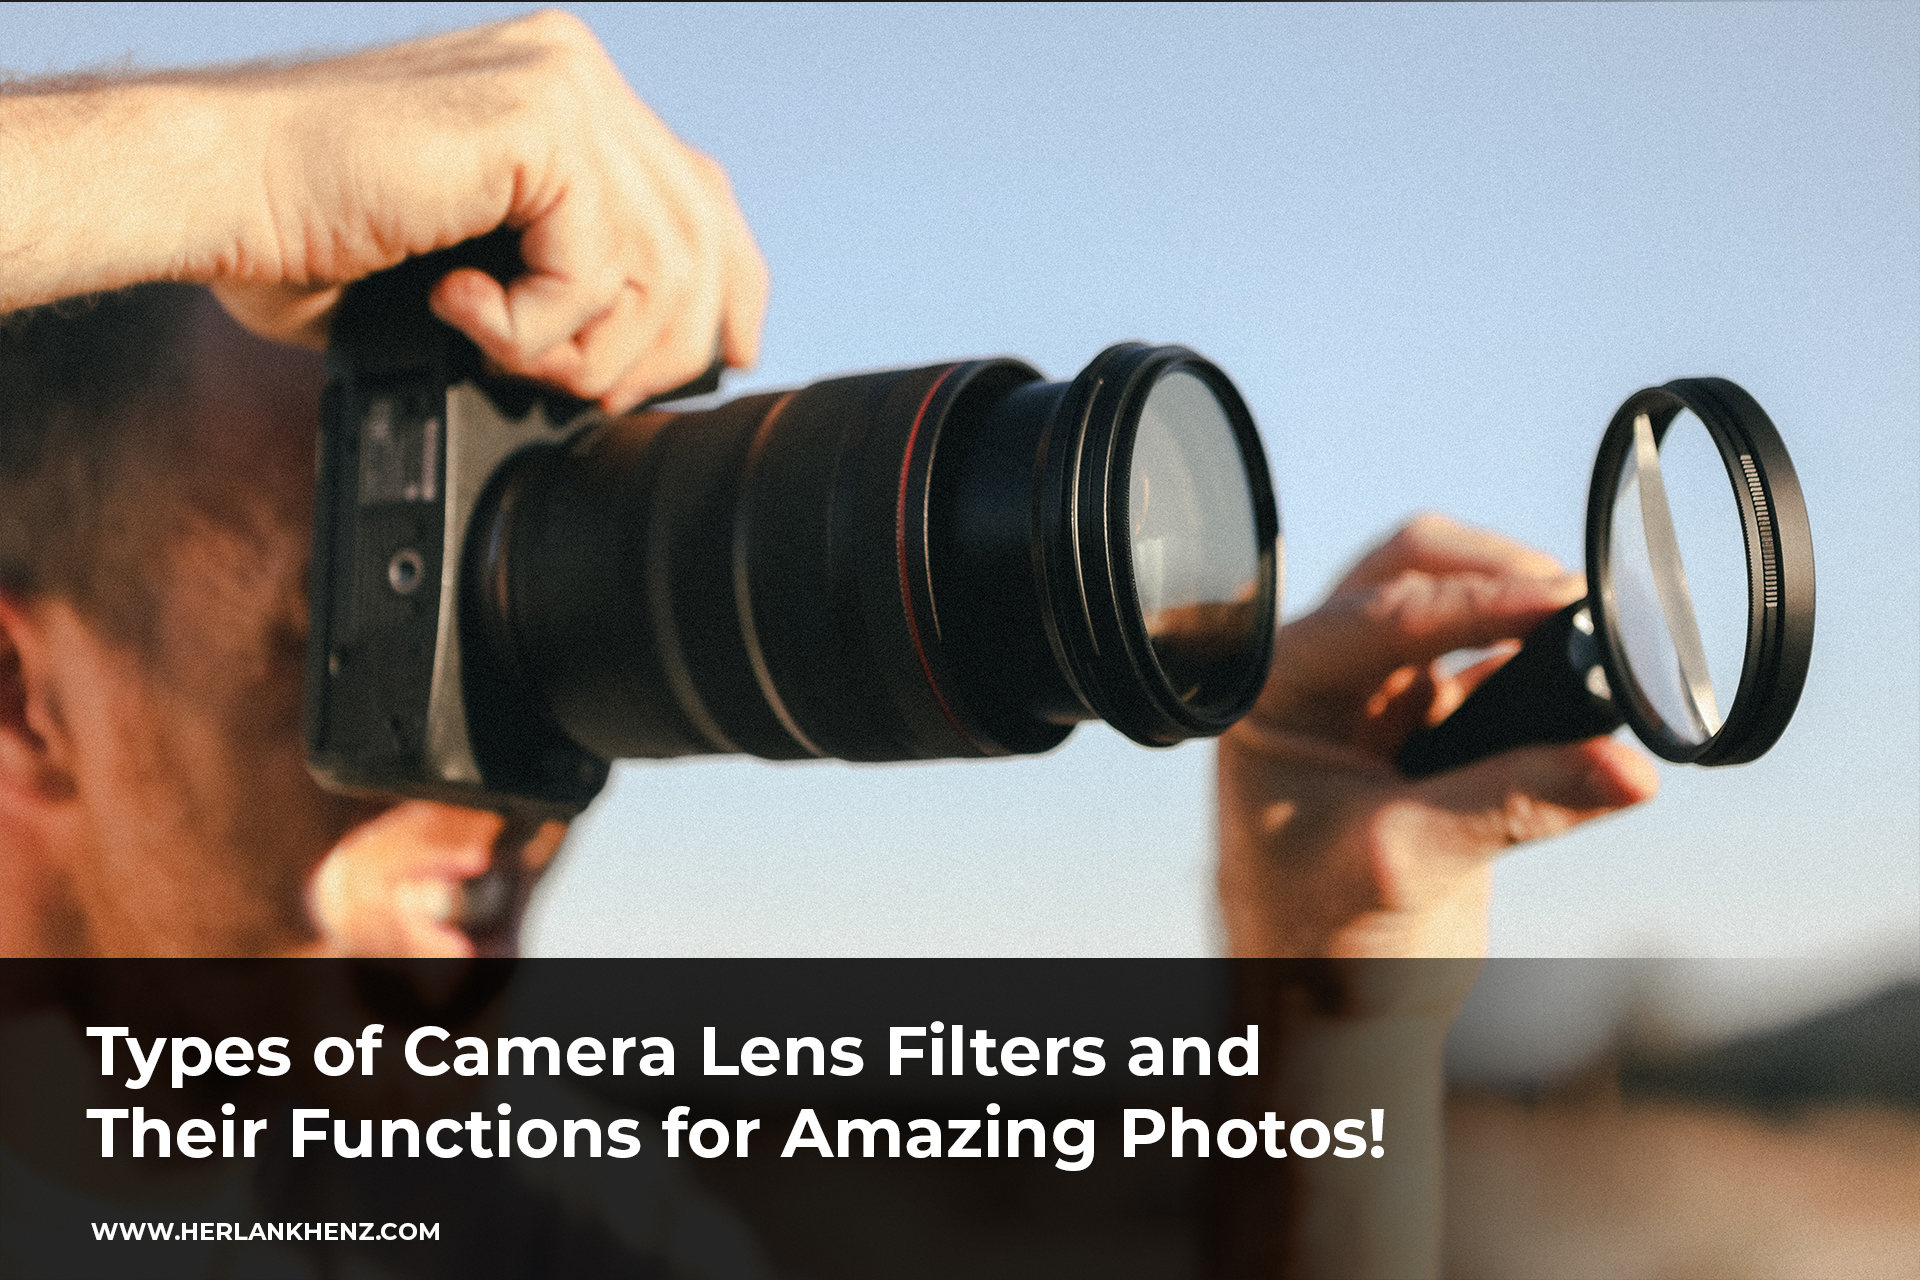 ¡Conozca los tipos de filtros de lentes de cámara y sus funciones para obtener fotografías increíbles!